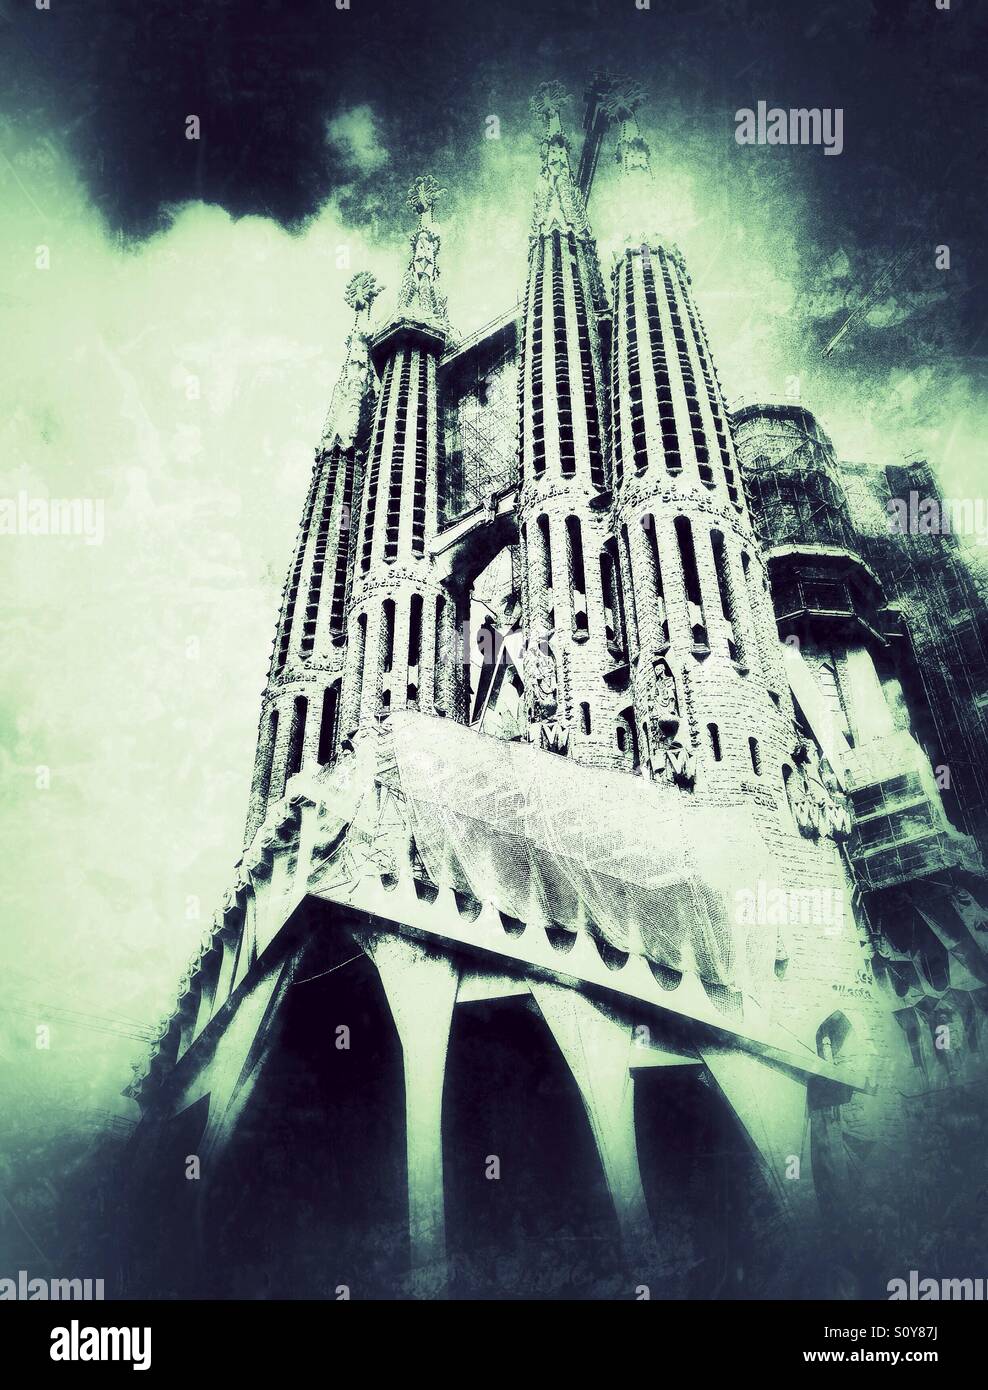 View of Sagrada Familia in Barcelona, Spain Stock Photo